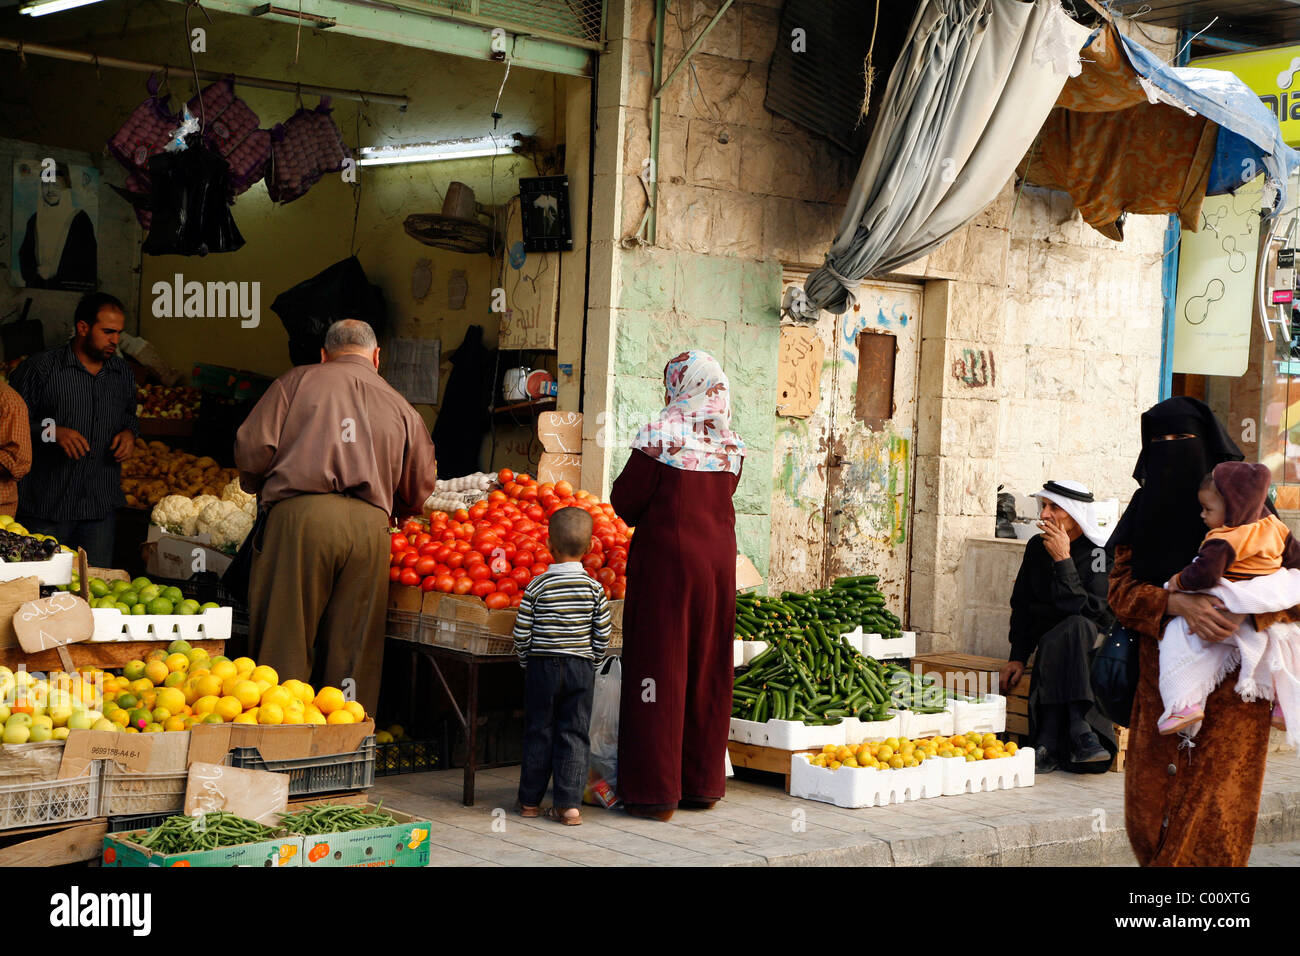 Magasin de fruits et légumes au marché, Karak, Jordanie. Banque D'Images